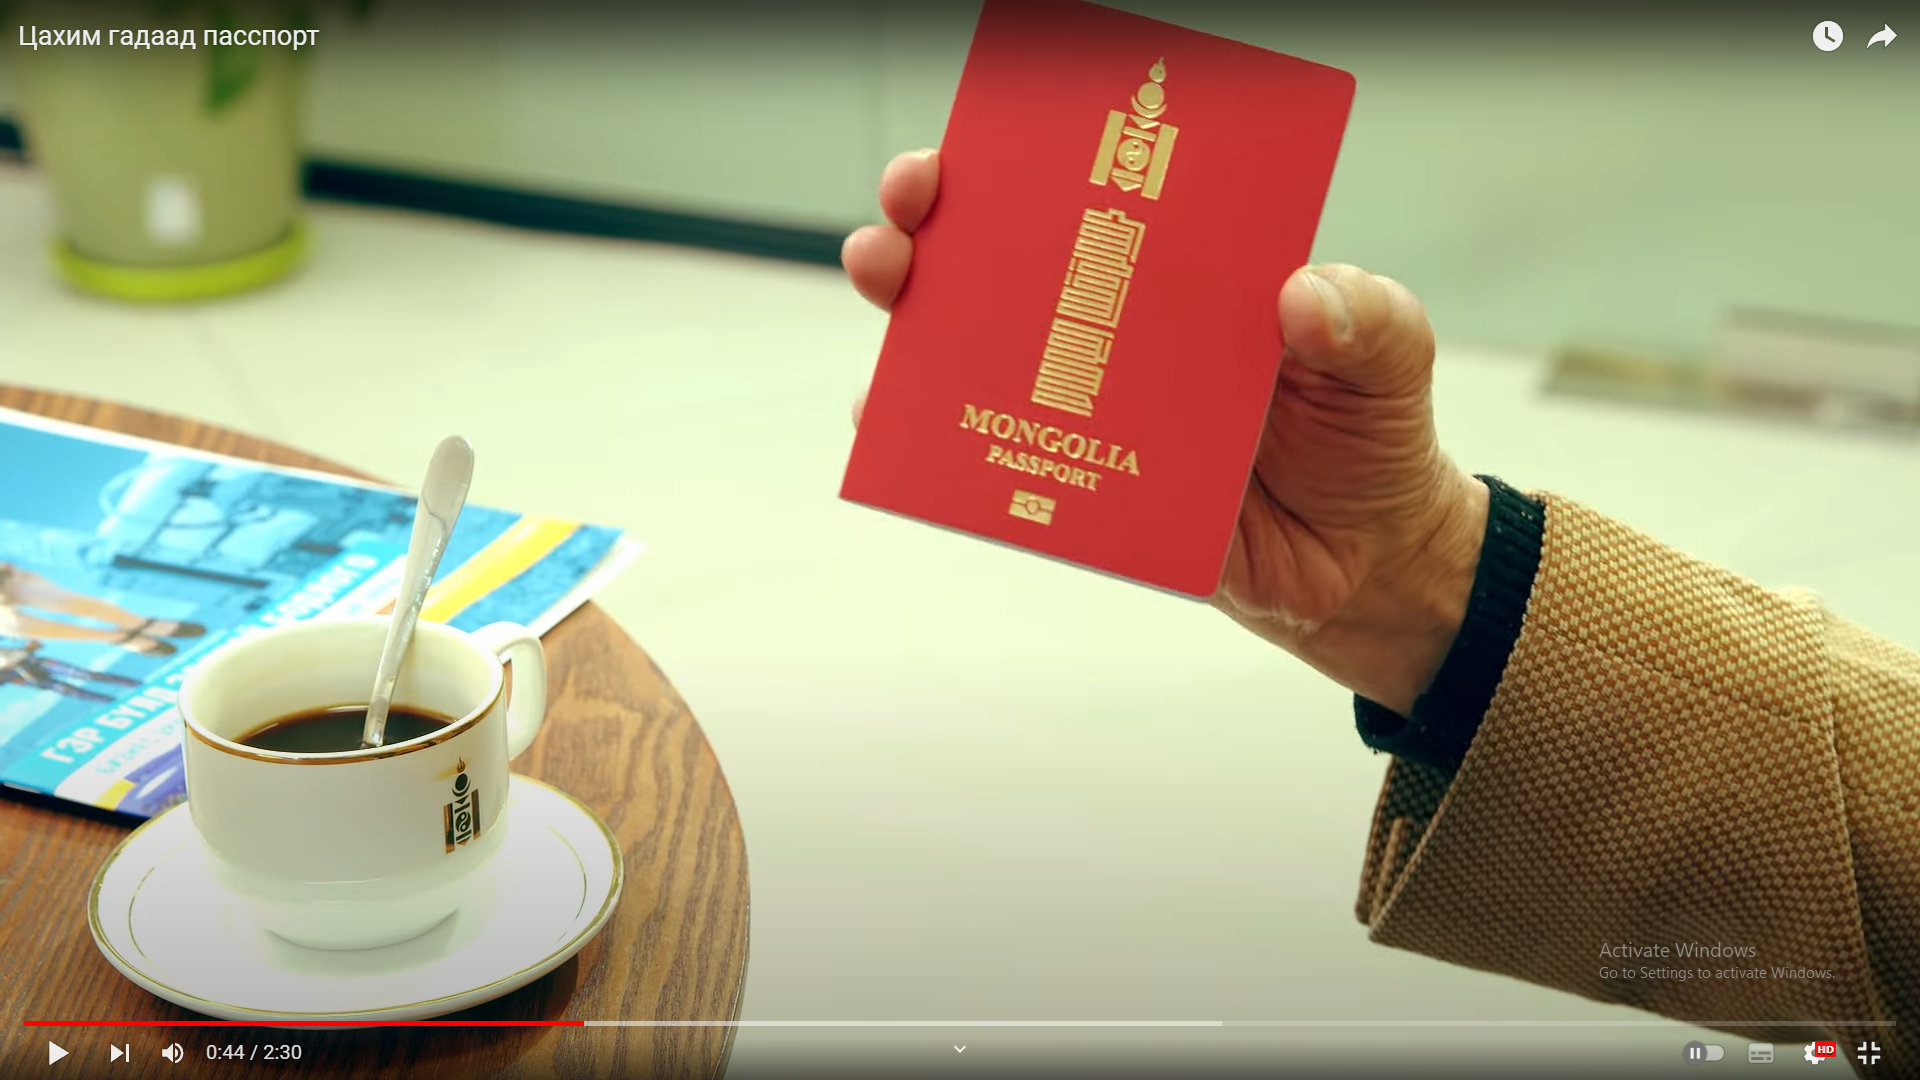 Үндэсний энгийн цахим гадаад паспорт